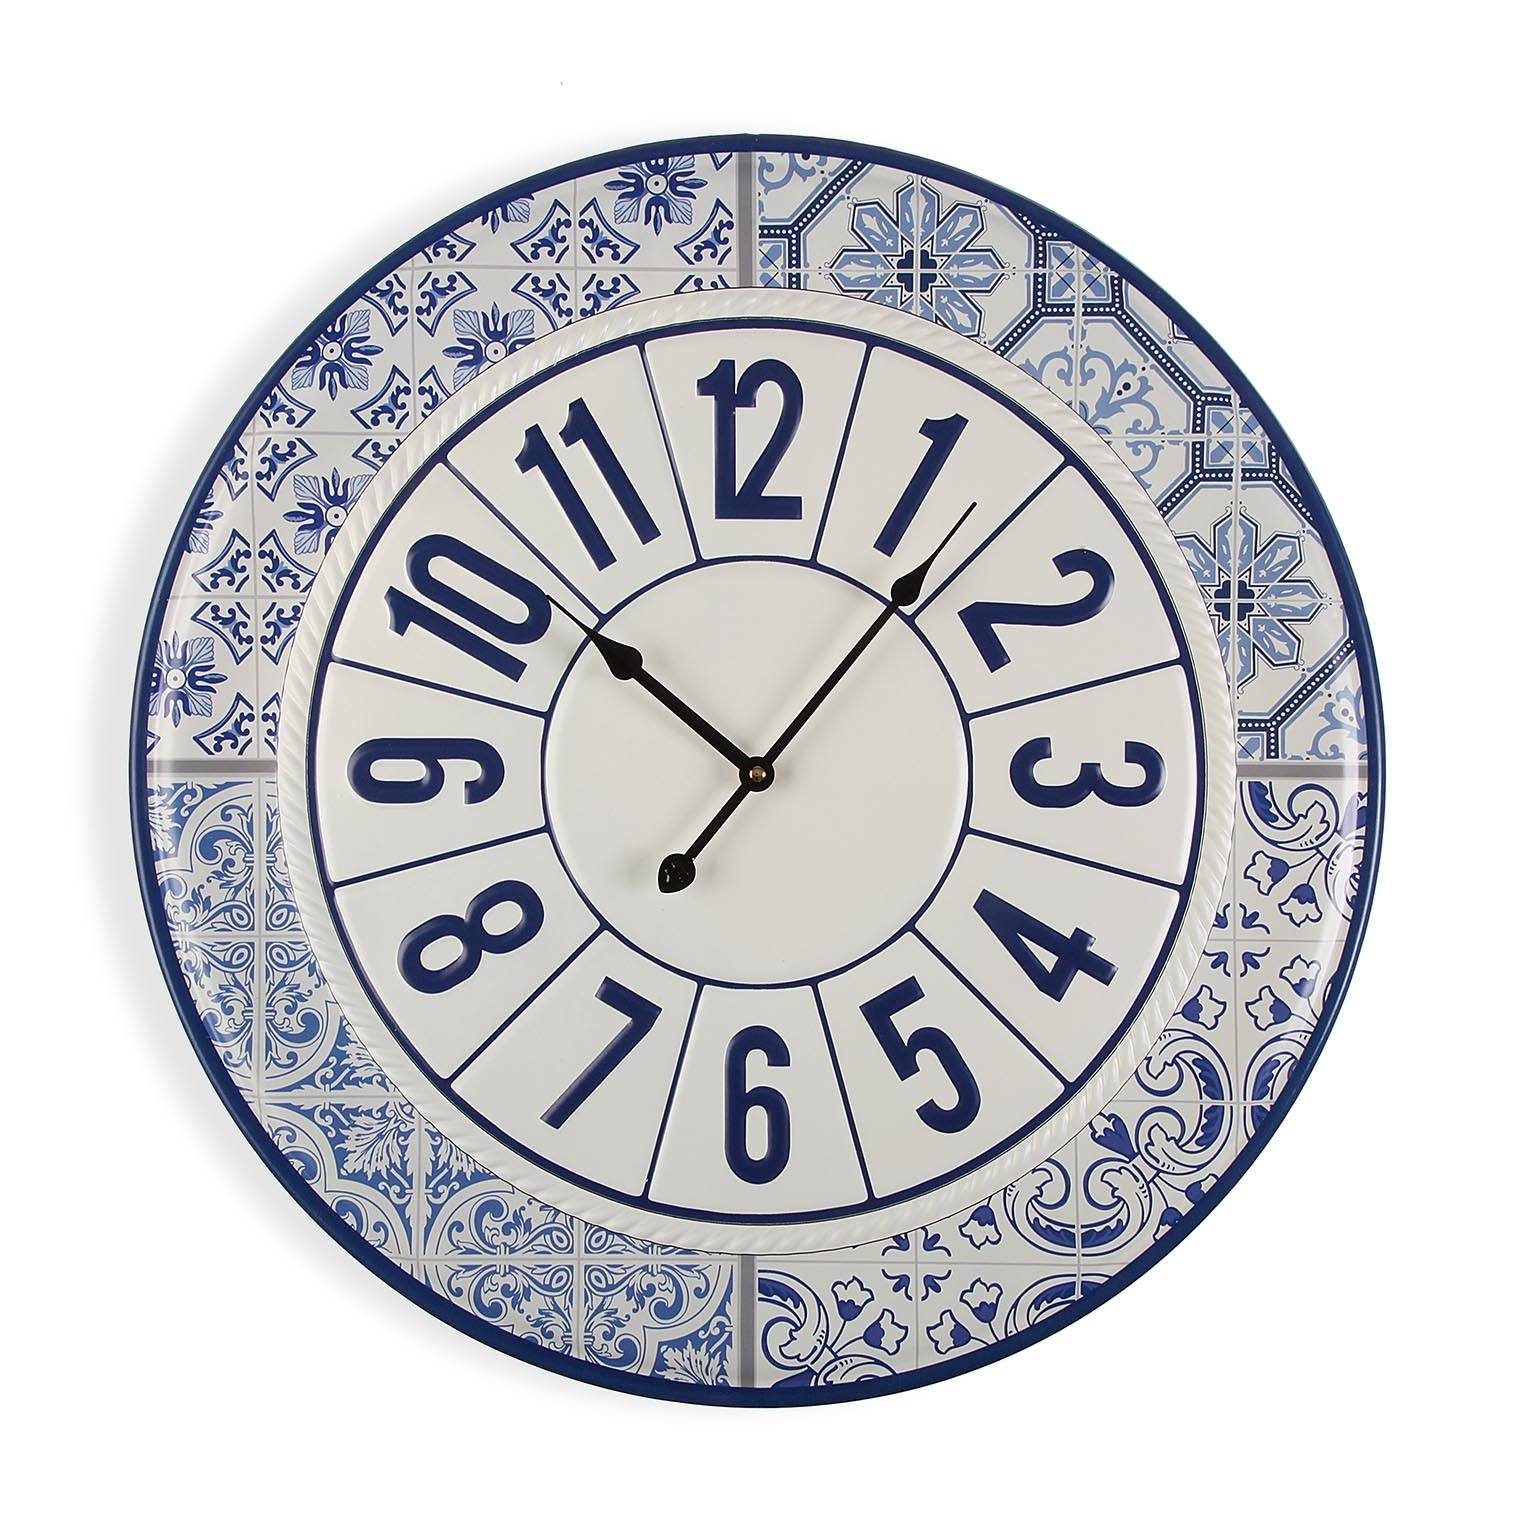 Versa Burkes Reloj de Pared Decorativo para la Cocina, el Salón